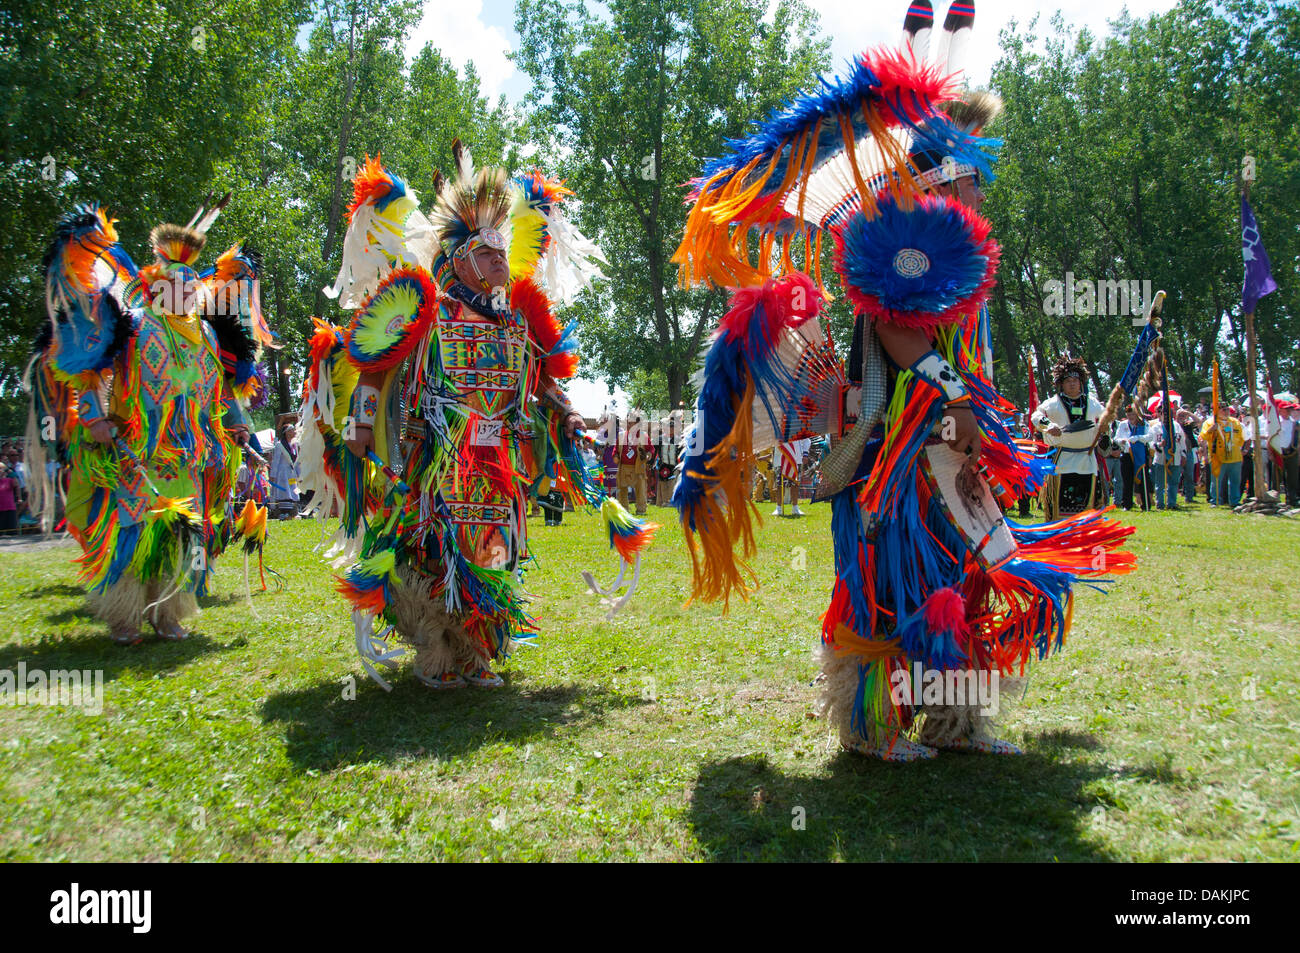 La fière nation mohawk vivant dans la communauté autochtone de Kahnawake situé sur la rive sud du fleuve Saint-Laurent, au Québec Canada célèbre son Pow-Wow annuel avec tambour et danses traditionnelles Banque D'Images